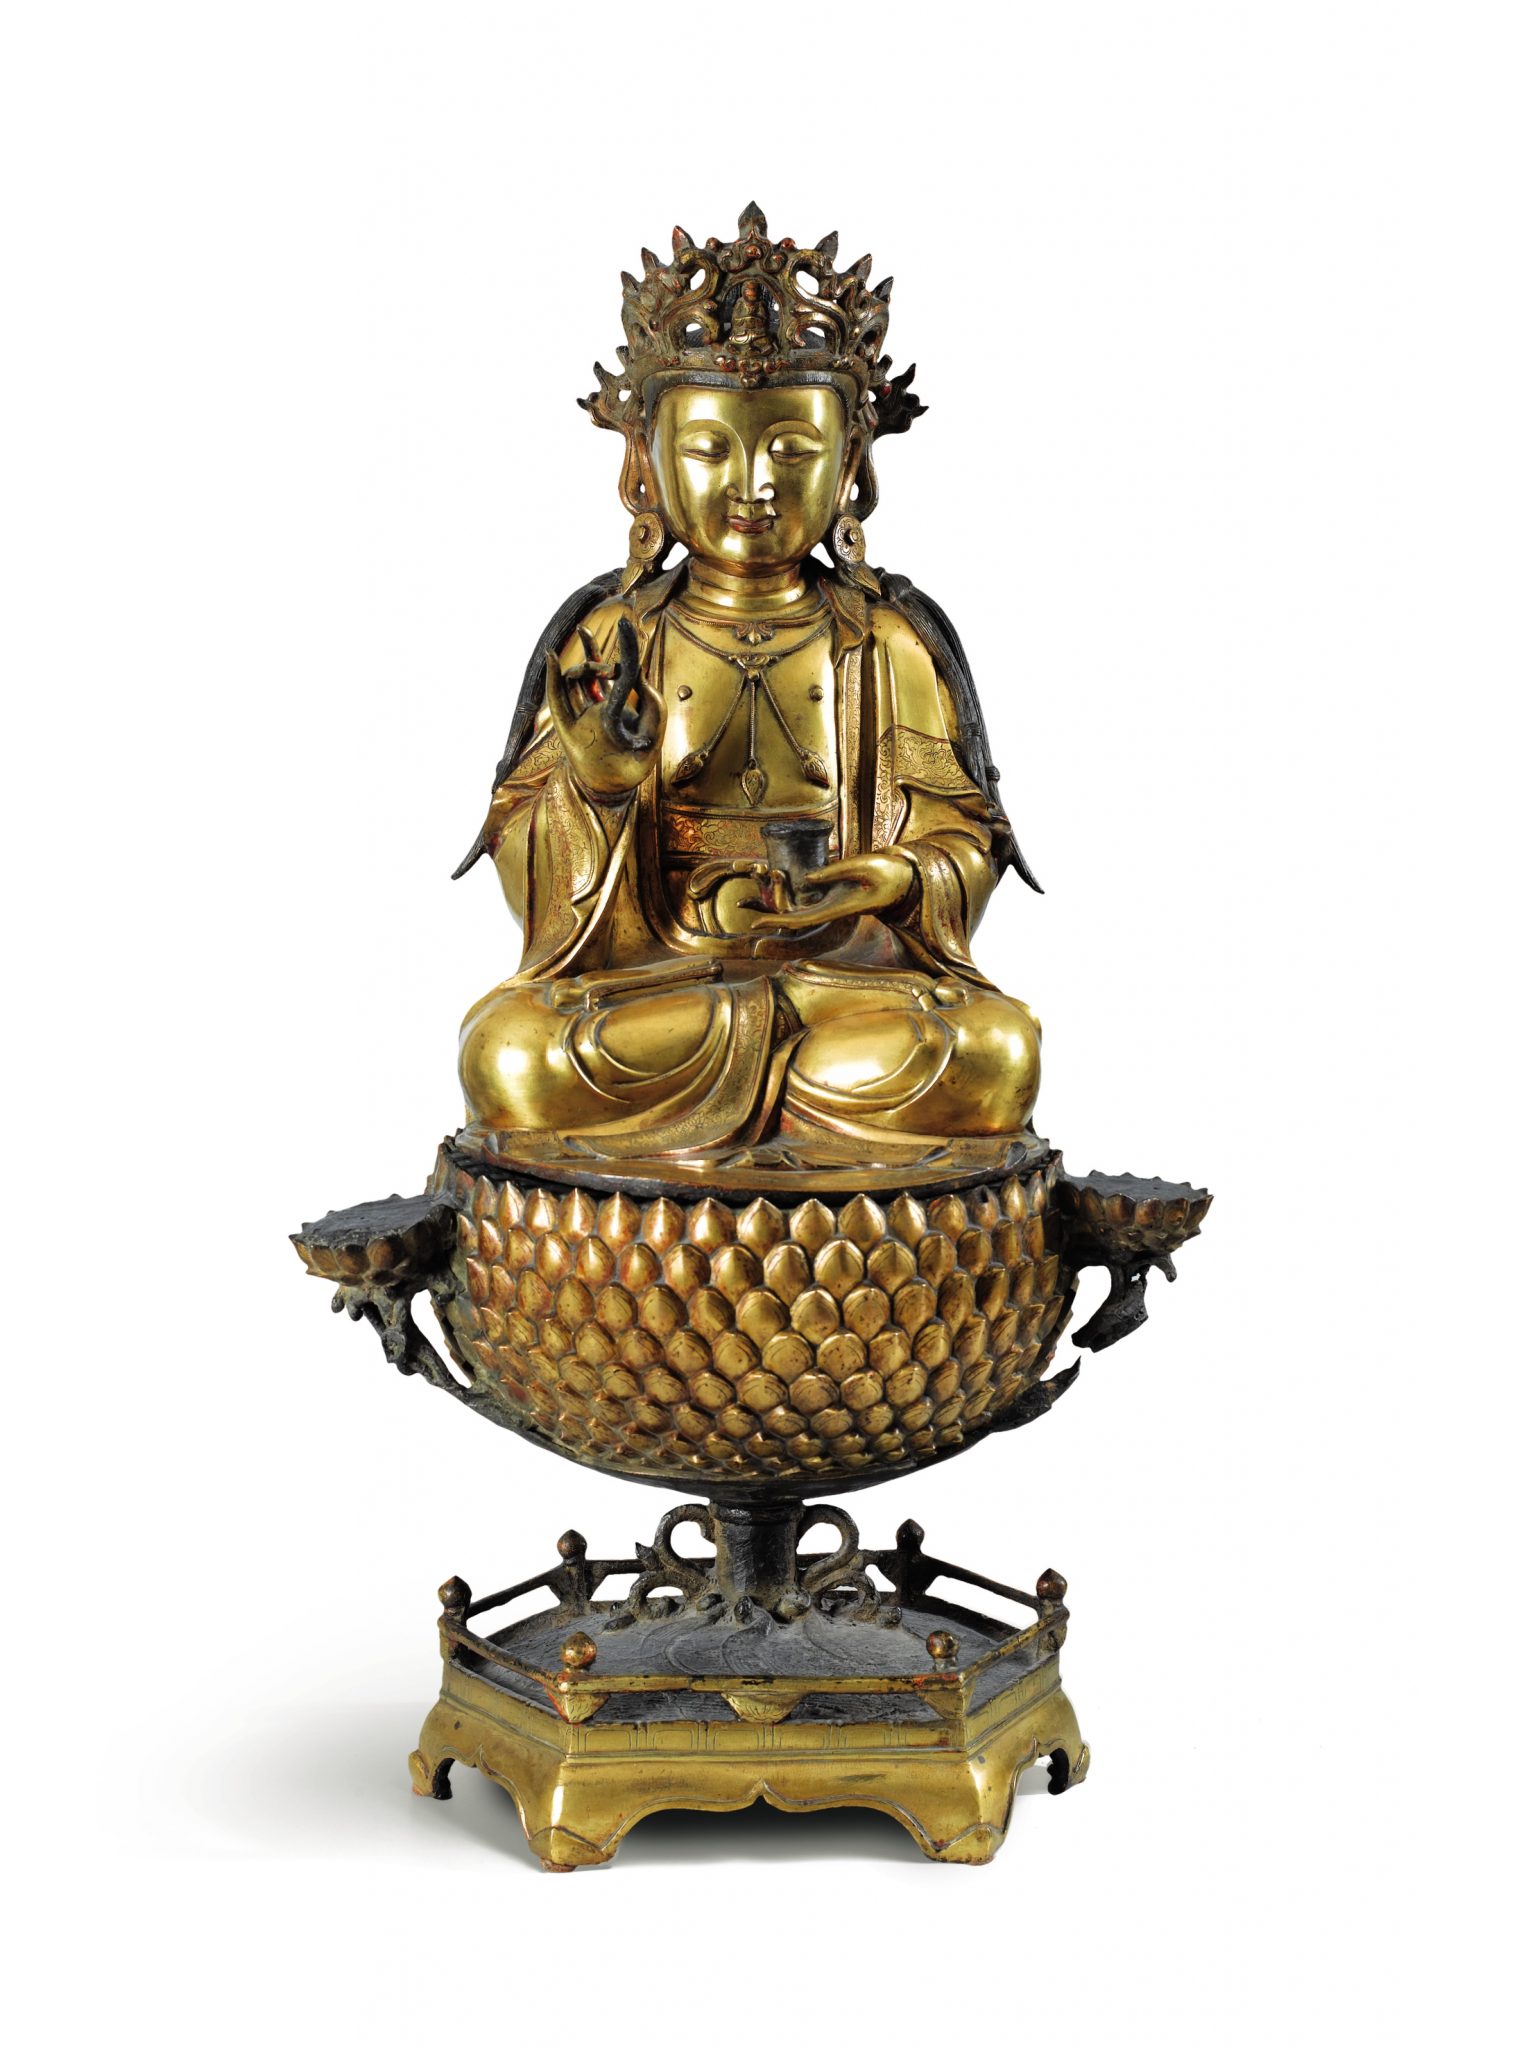 Il Buddha che salva gli essere senzienti da Sotheby’s a 800 mila